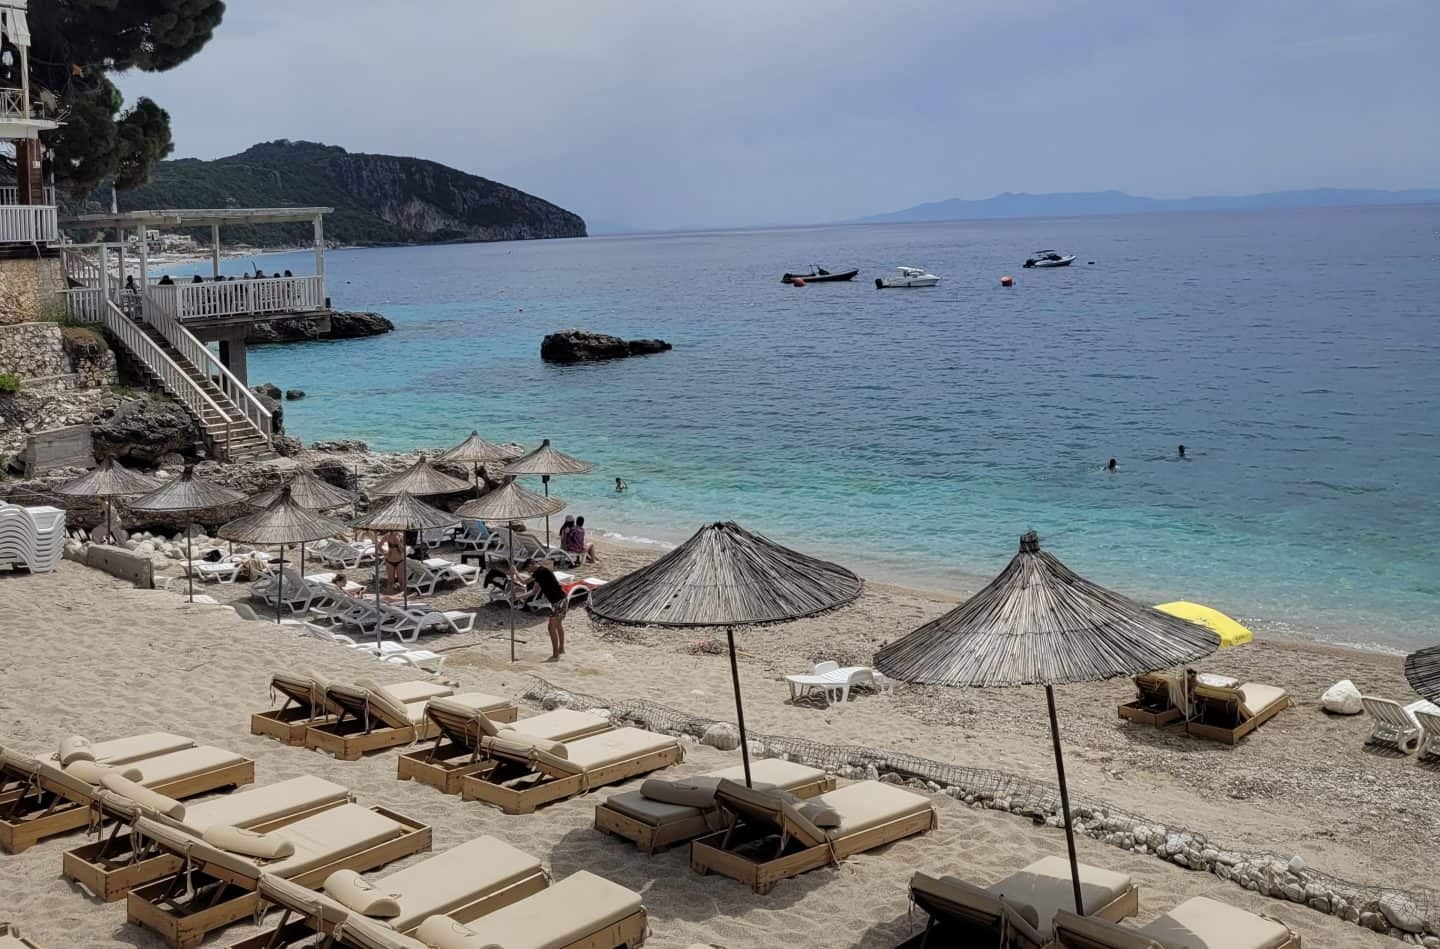 Los mejores hoteles de playa de Dhermi, sillas de playa, algunas con sombrillas de paja, en la playa rodeada de mar azul claro en un día soleado